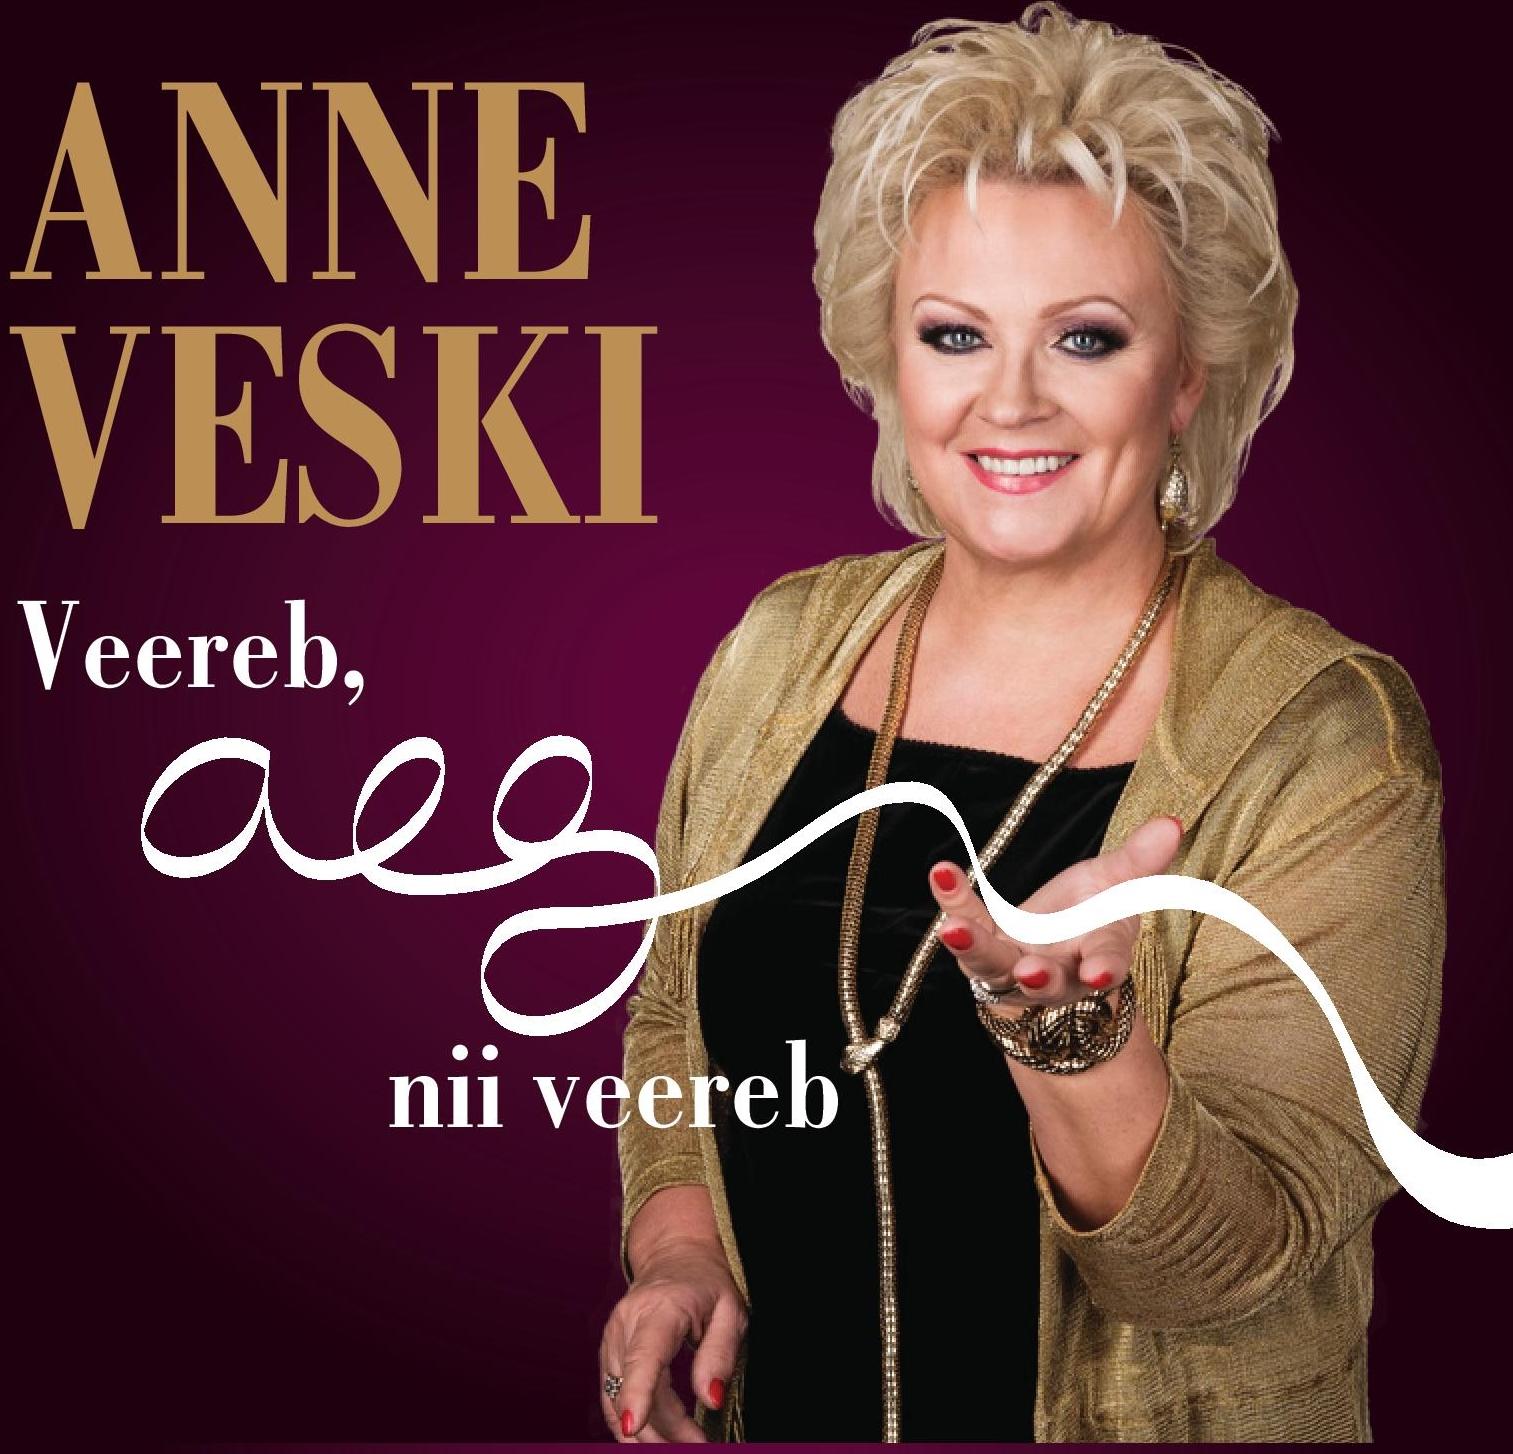 ANNE VESKI - VEEREB, AEG NII VEEREB (2018) CD